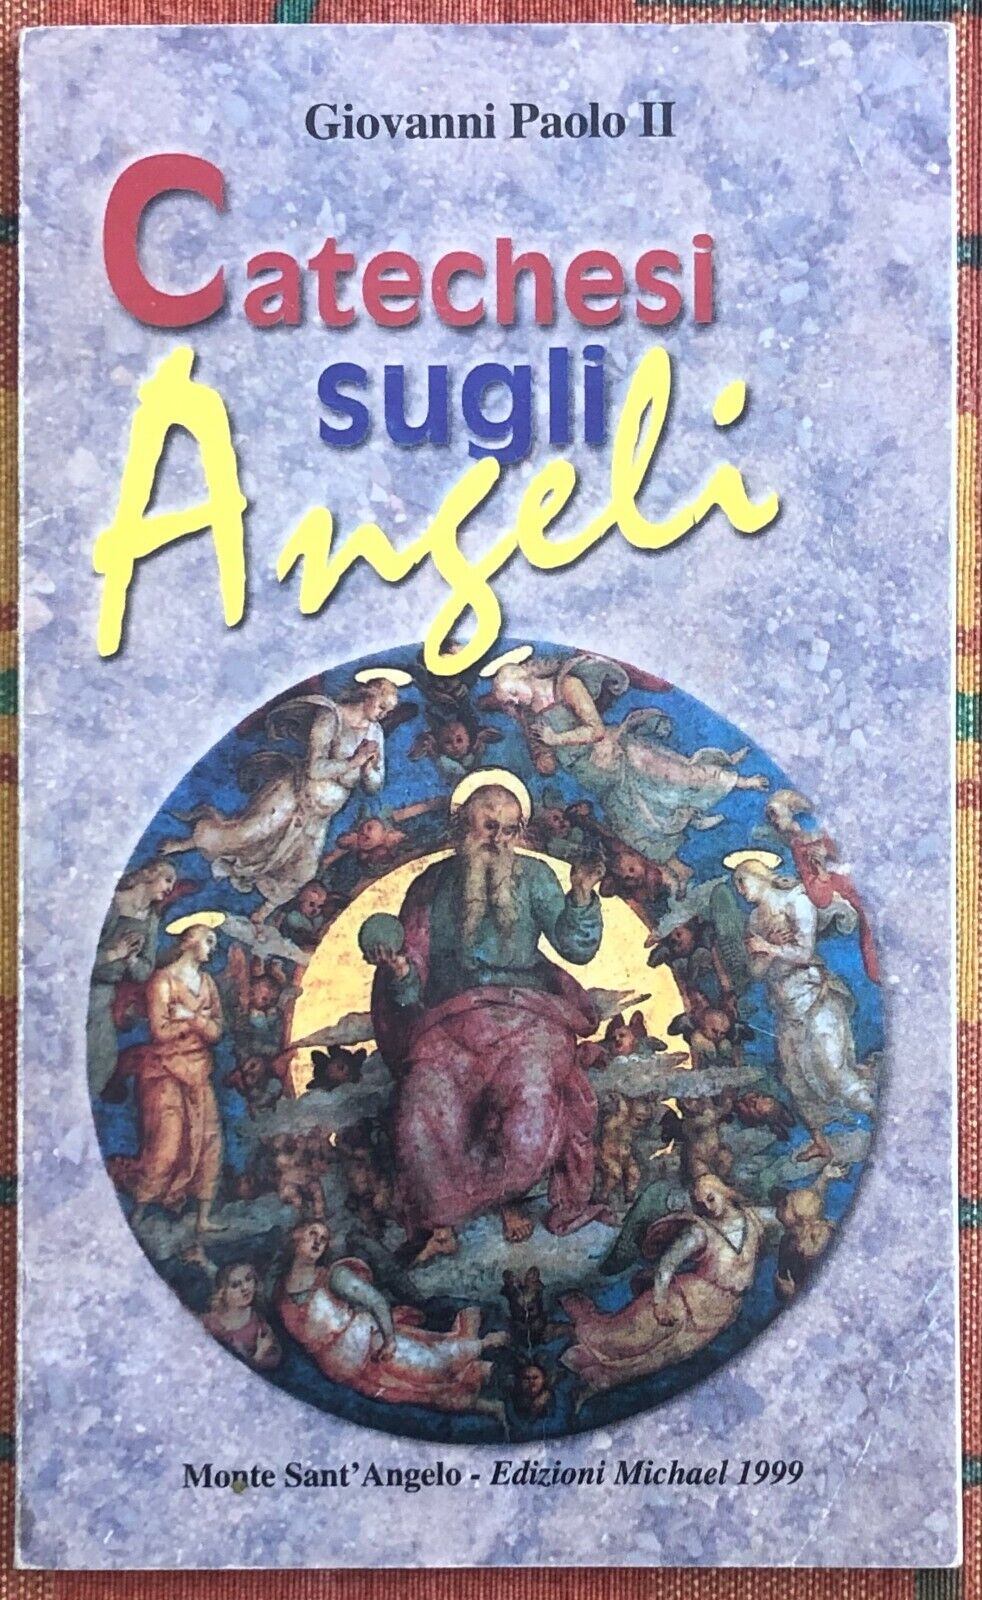 Catechesi sugli angeli di Giovanni Paolo Ii, 1999, Edizioni Michael 1999